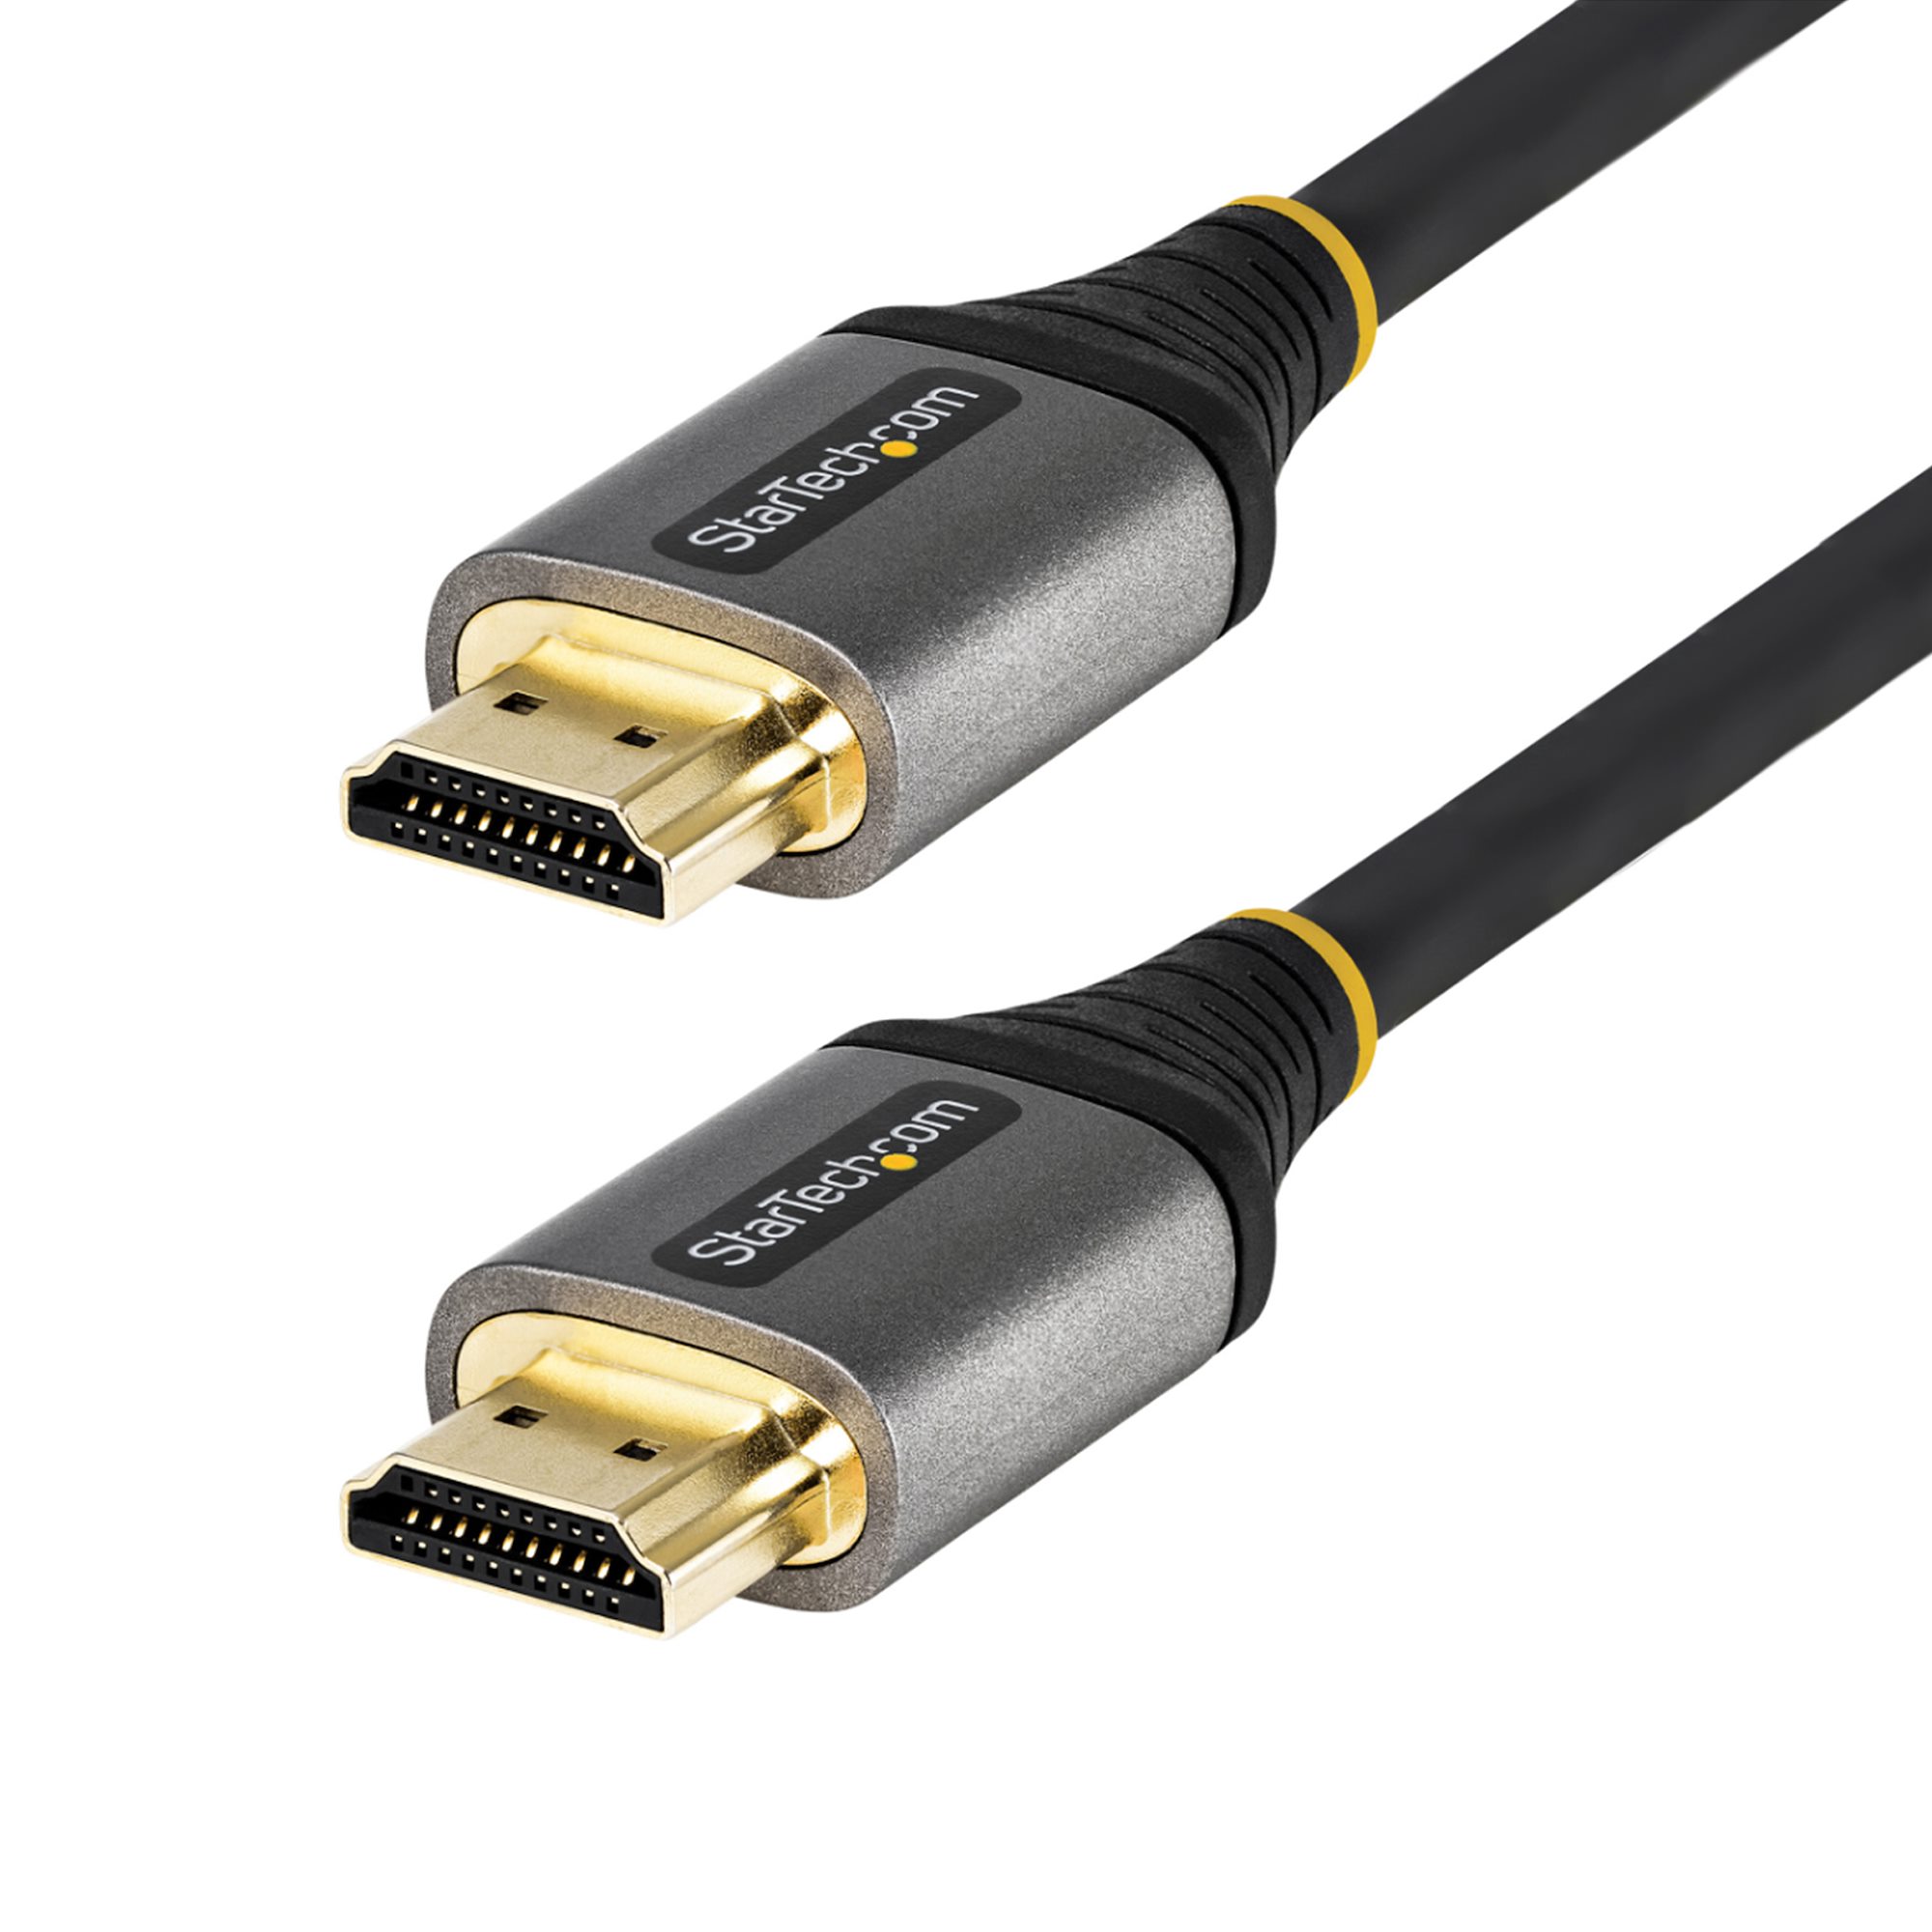 At sige sandheden I Blåt mærke 6ft 2m Certified HDMI 2.0 Cable 4K 60Hz - HDMI® Cables & HDMI Adapters |  StarTech.com